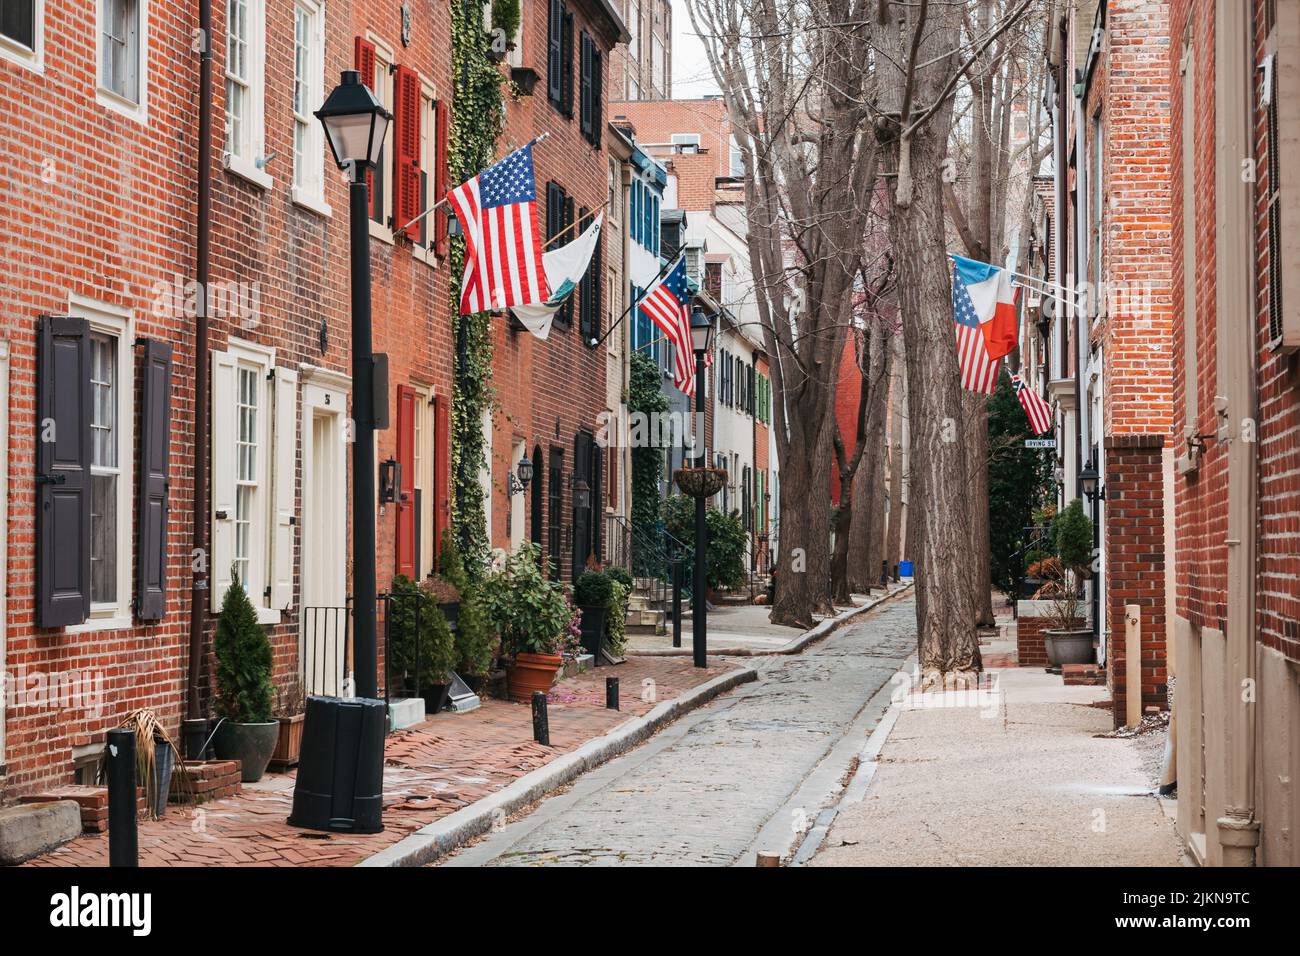 Banderas americanas y francesas de casas de ladrillo en una calle estrecha en Filadelfia, Estados Unidos Foto de stock